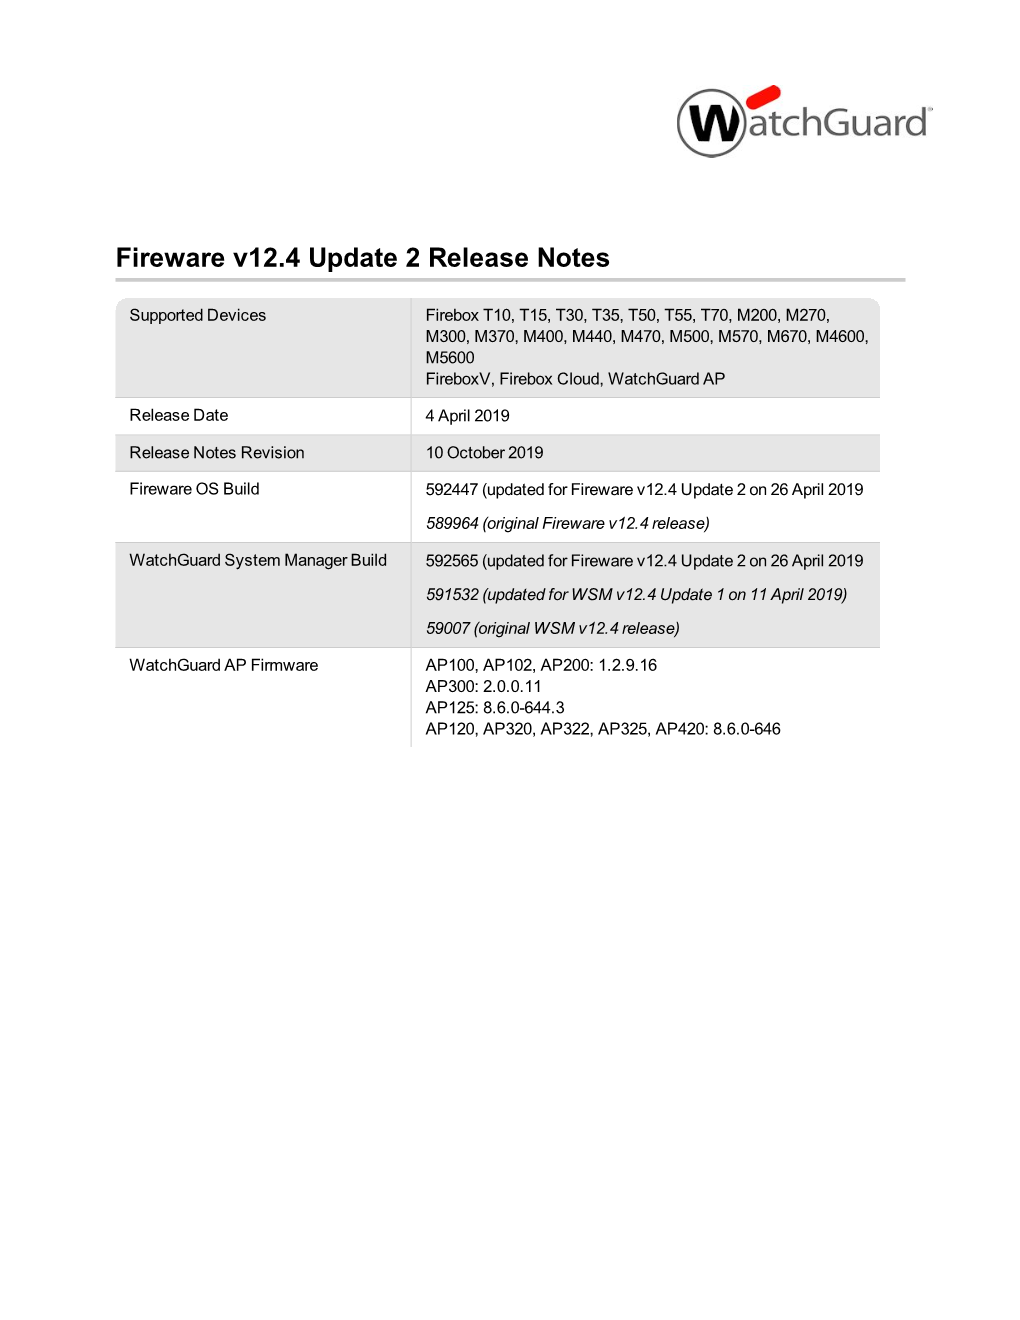 Fireware V12.4 Release Notes (PDF)